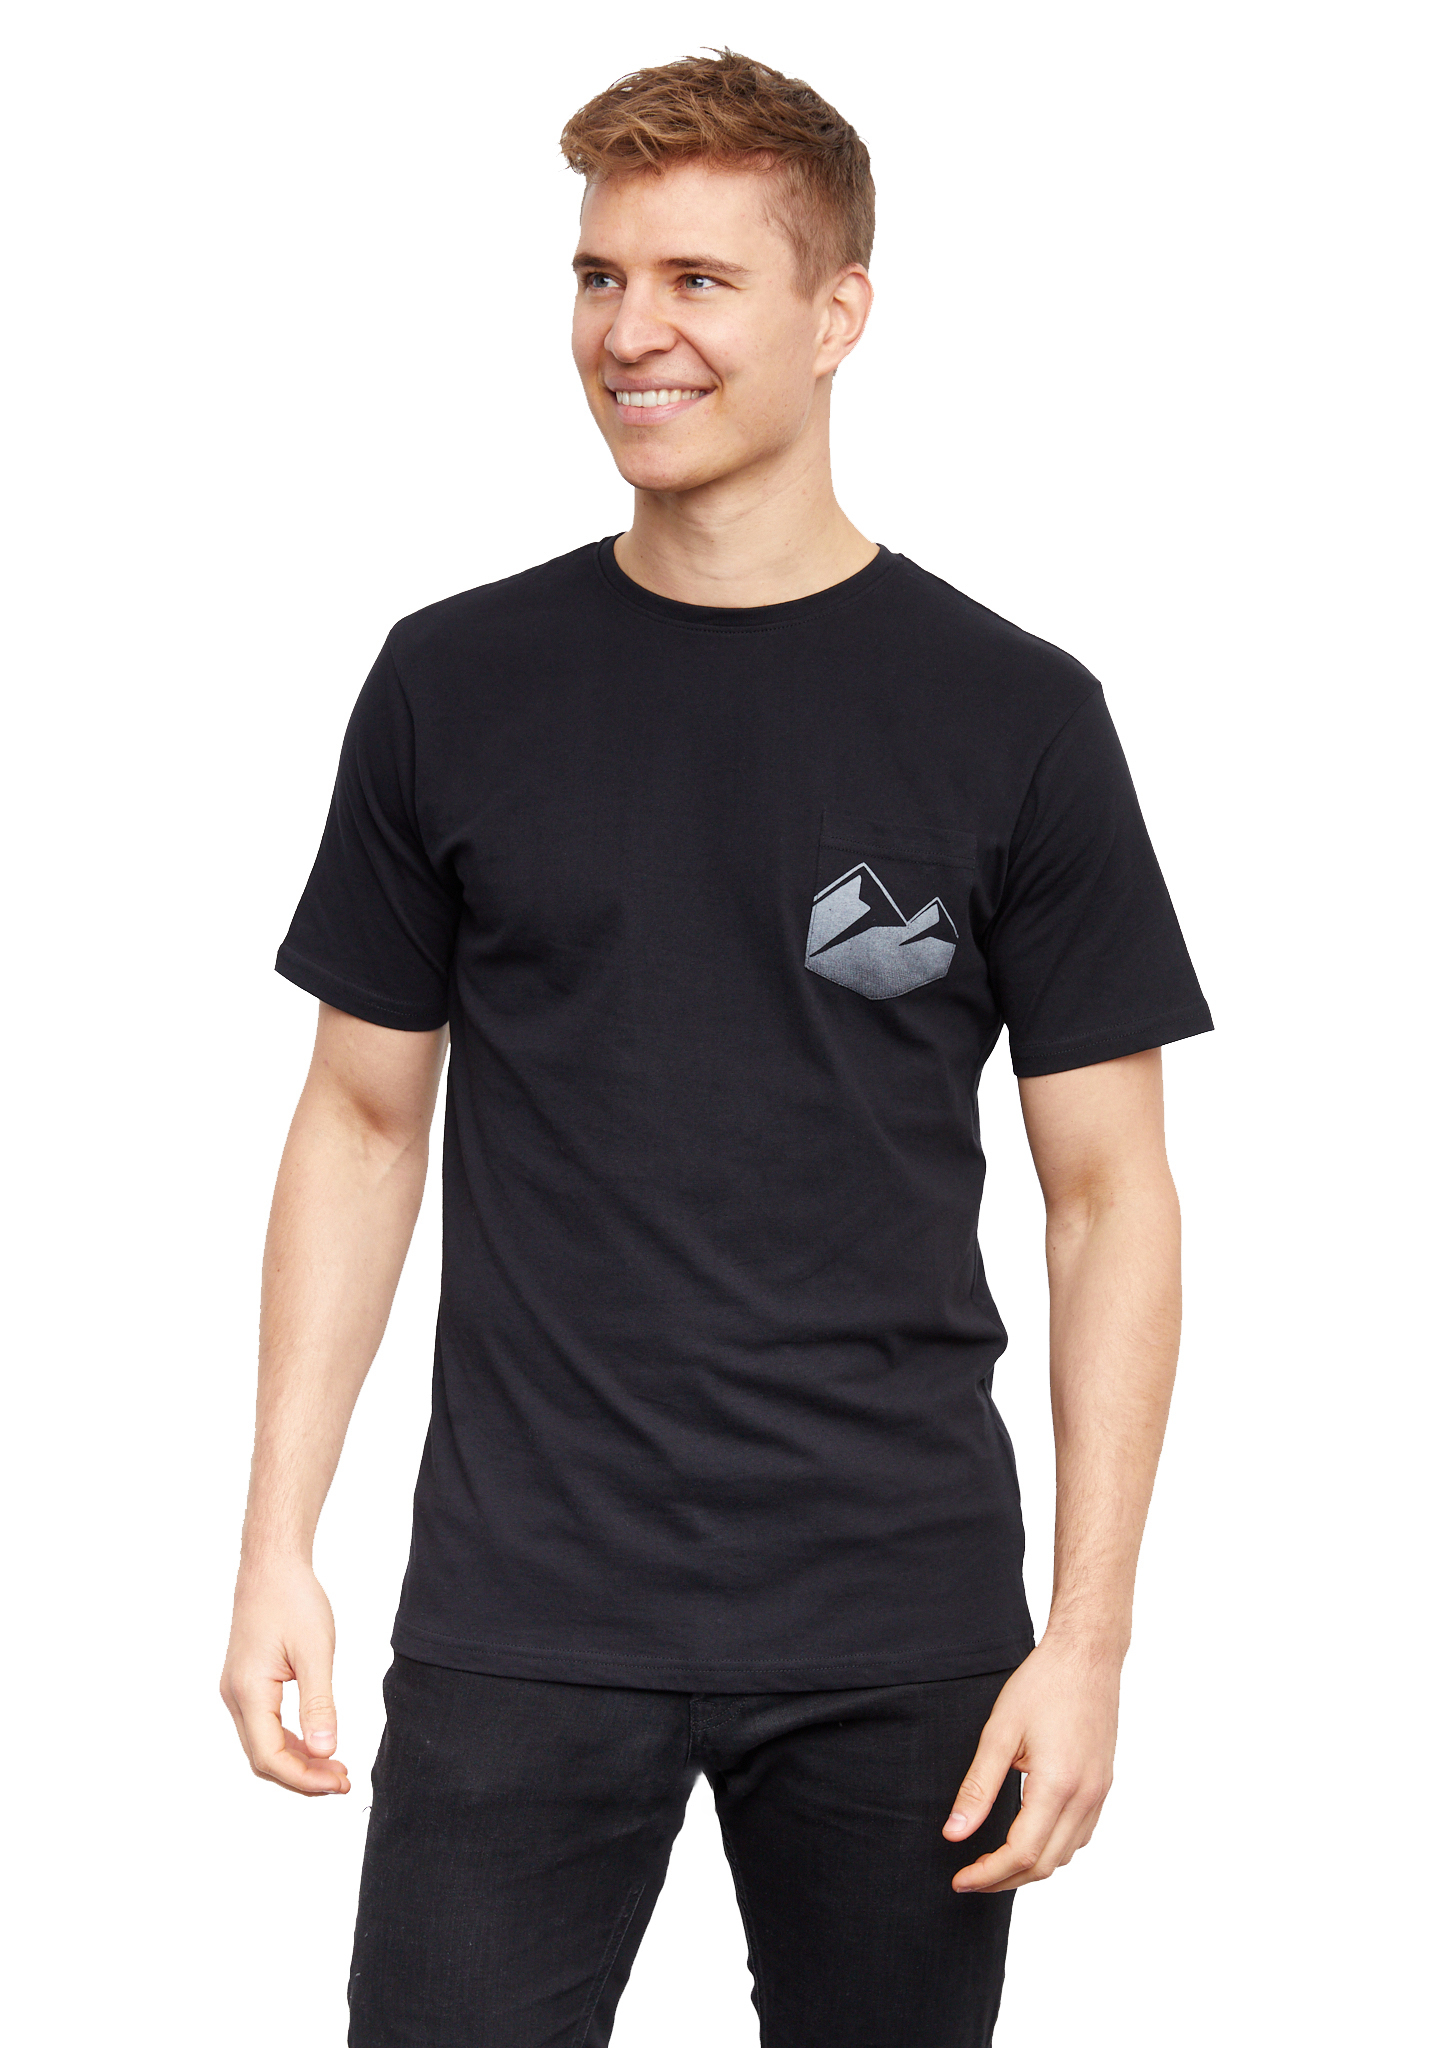 Lakeville Mountain Vran T-Shirt black XL